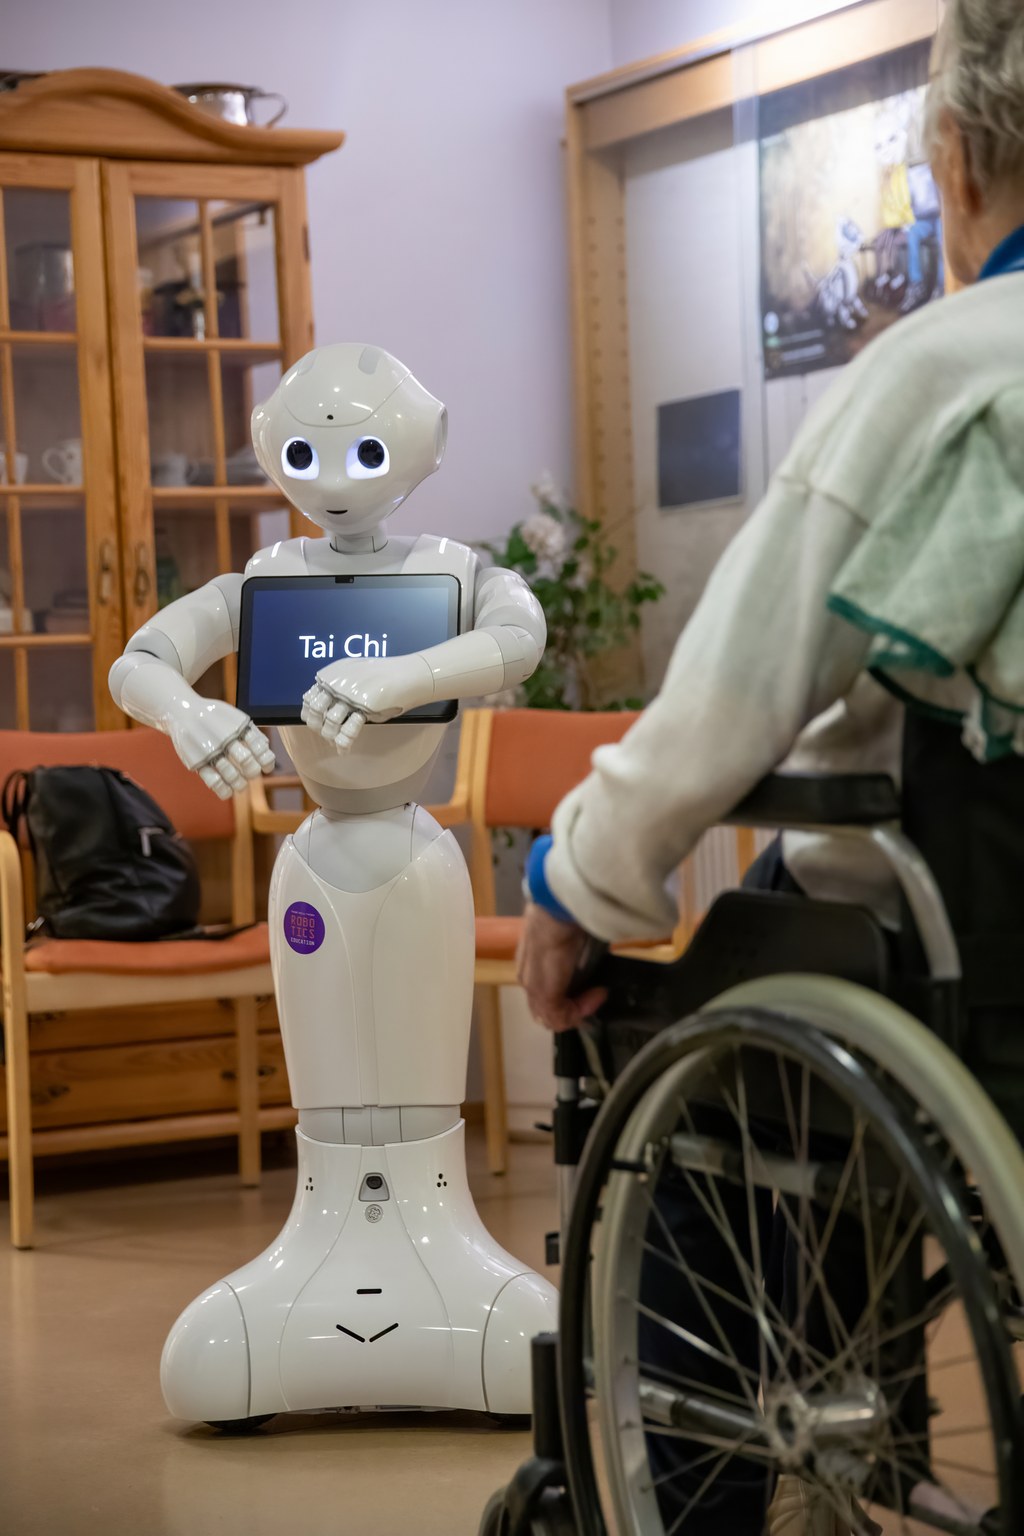 Pepper-robotti ohjaa jumppaa. Pepper muistuttaa jonkin verran ihmistä. Se seisoo, sillä on kädet, pää ja kasvot. Sen edustalla on pyörätuolissa istuva ihminen.